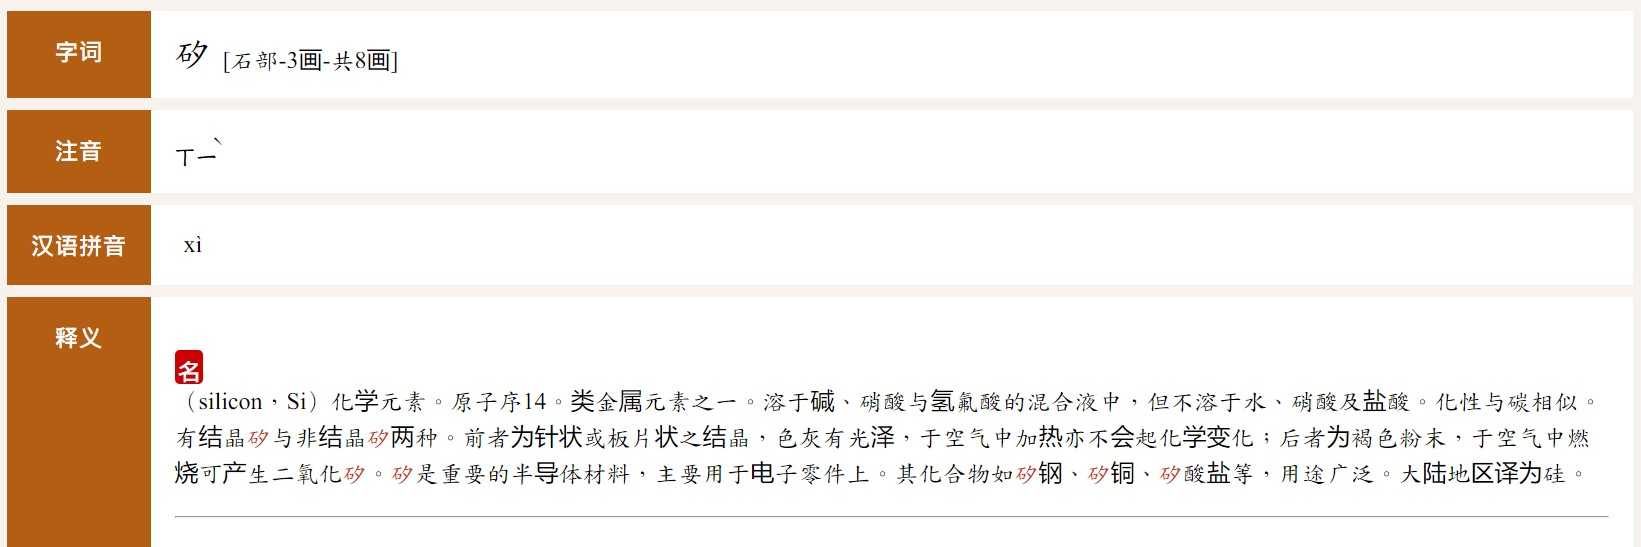 图为台湾教育部《重编国语辞典修订本》的网页截图 第4张